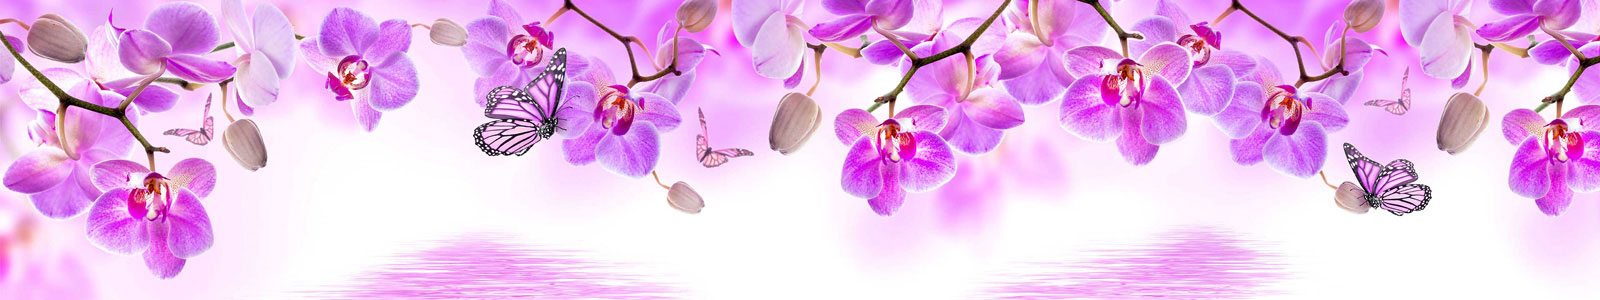 №5896 - Пурпурные орхидеи и бабочки на белом фоне